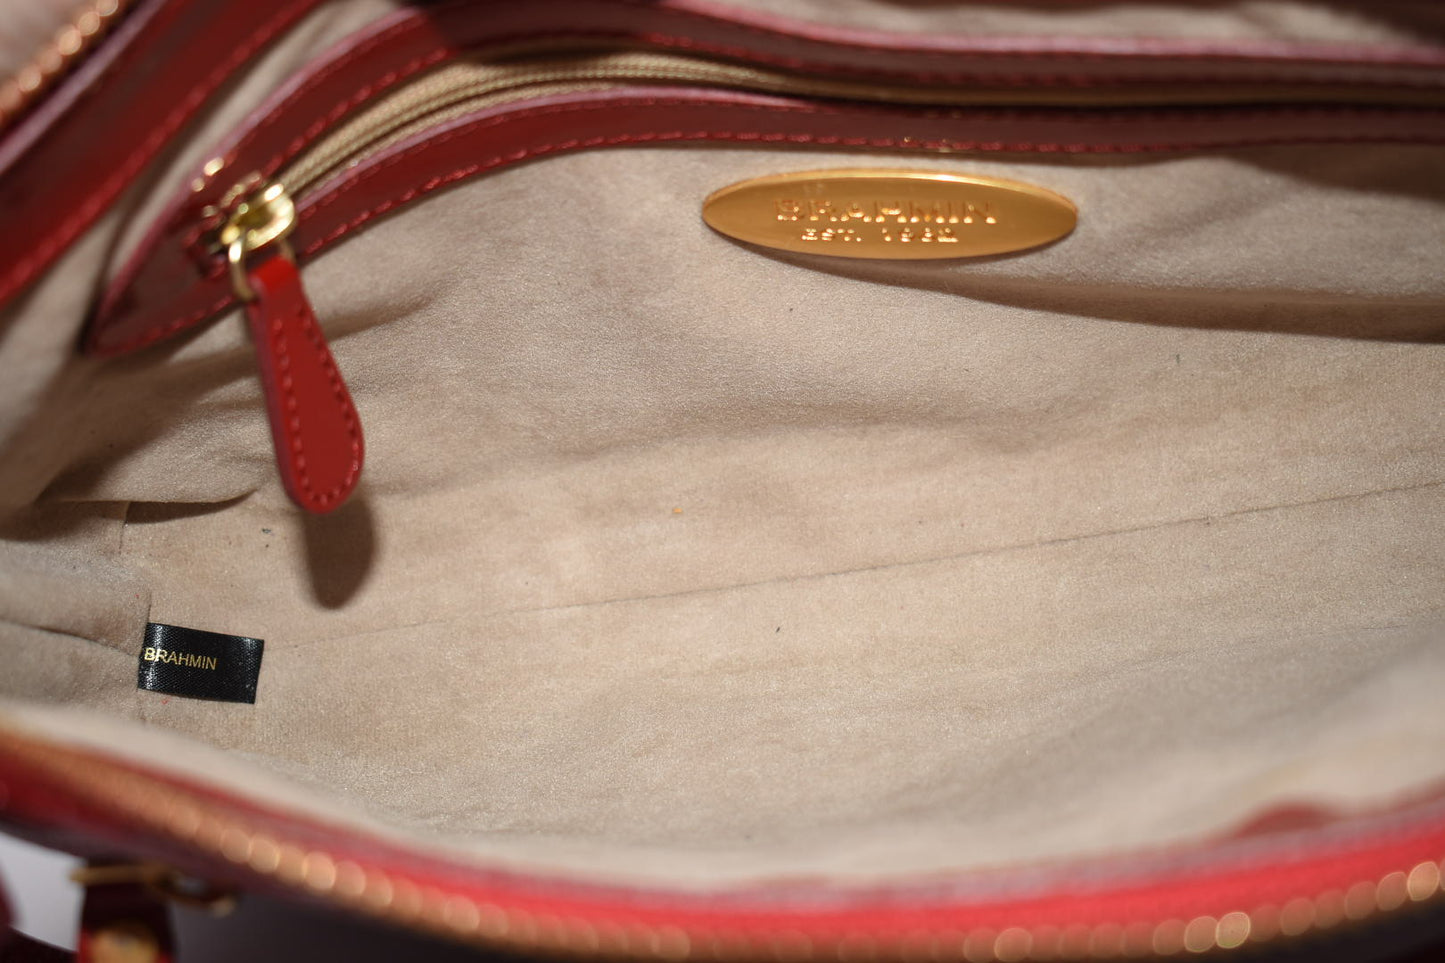 Vintage Brahmin Red Leather Shoulder Bag